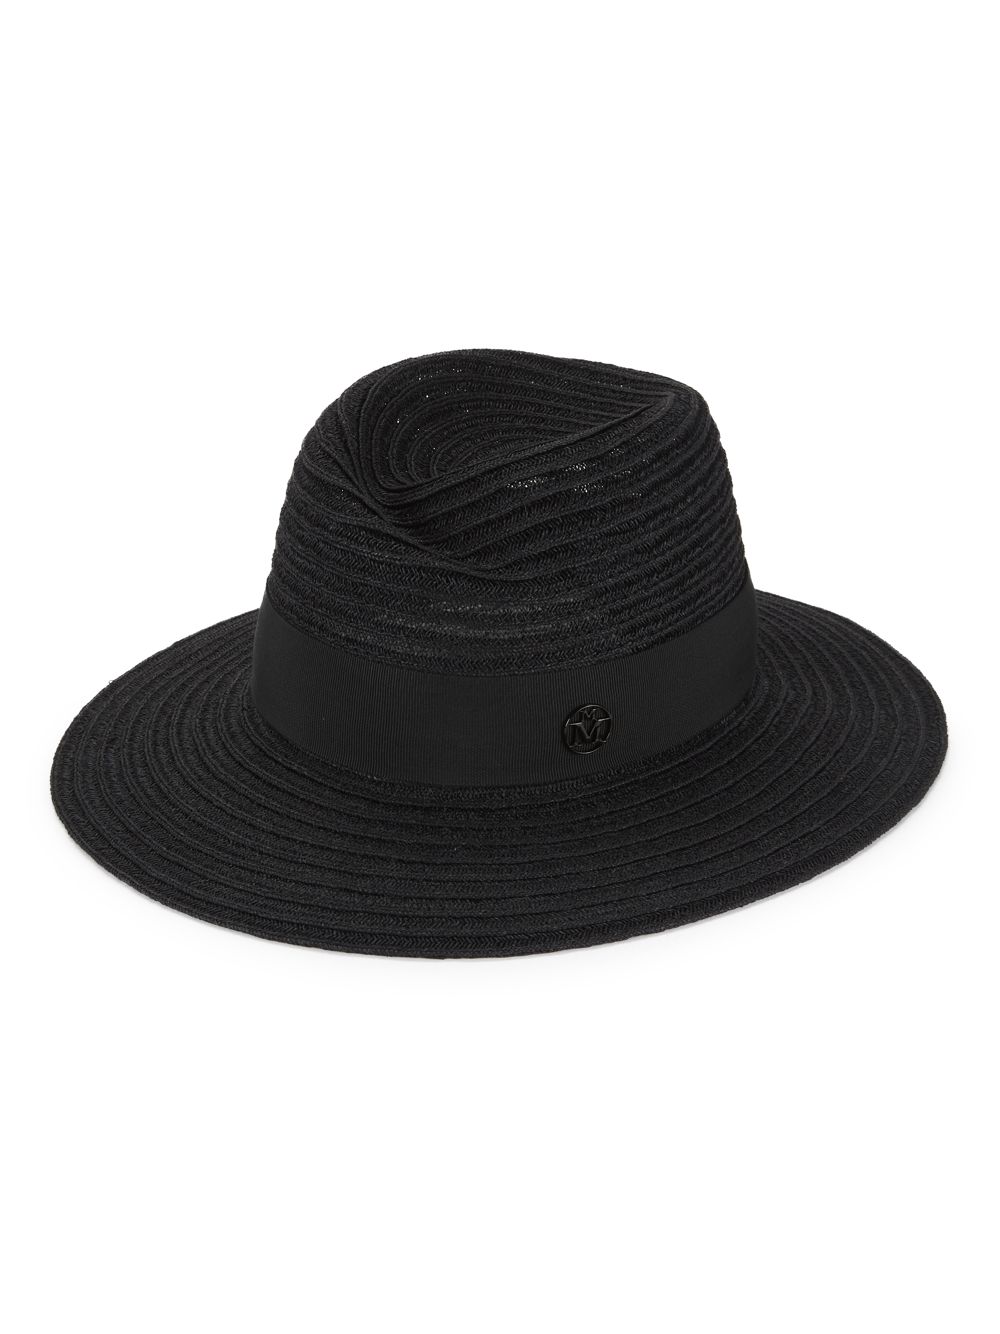 Соломенная шляпа-федора Virginie Maison Michel, черный